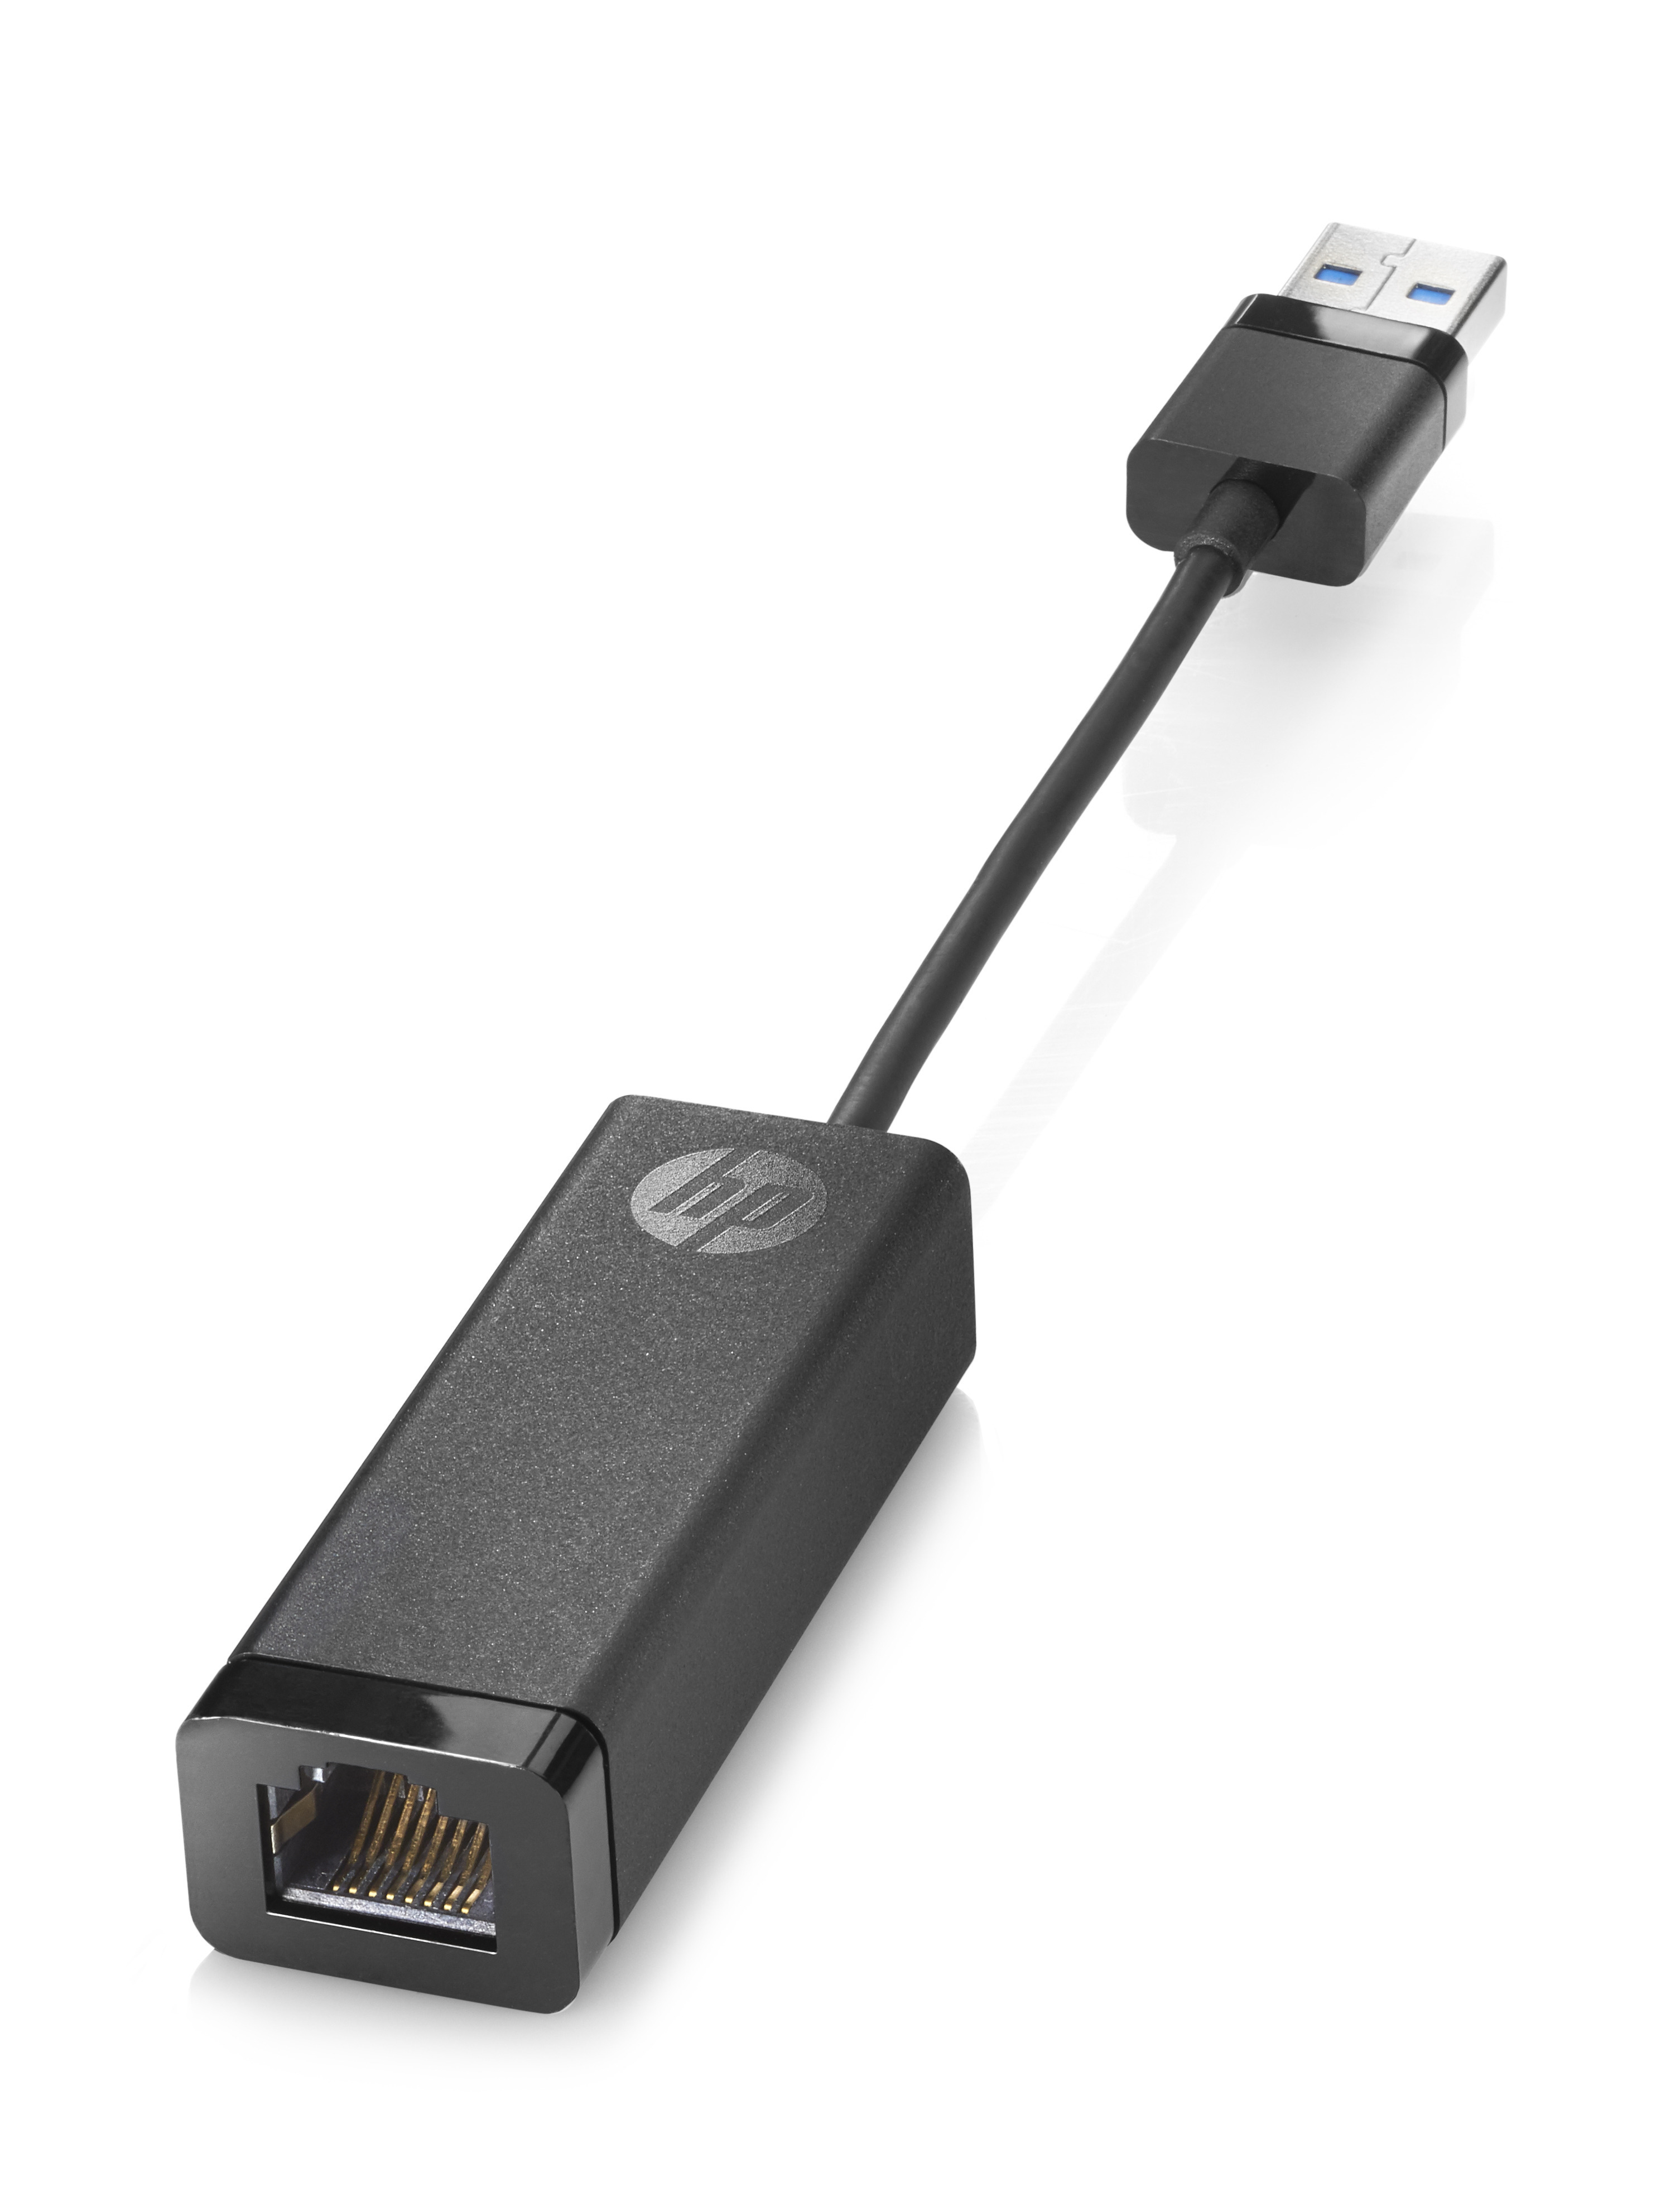 N7P47AA HP USB 3.0 To Gigabit LAN Adapter Factory Sealed